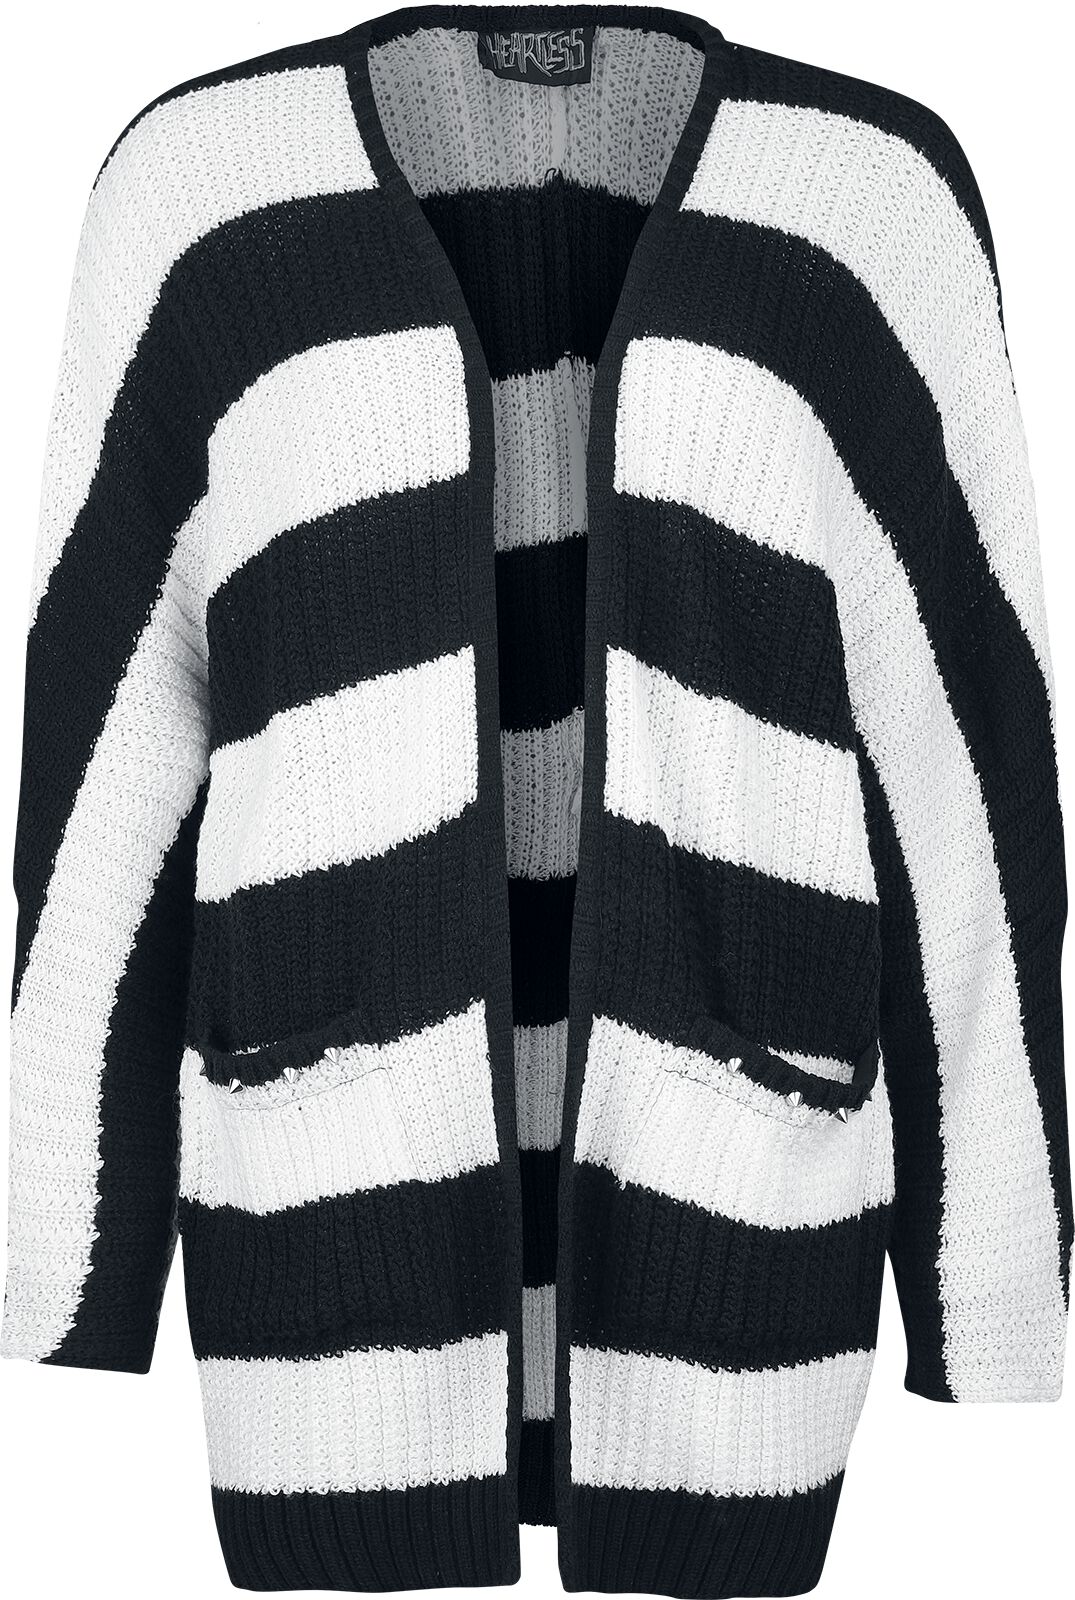 Heartless - Gothic Cardigan - In A Daze Cardigan - XL bis 4XL - für Damen - Größe 4XL - schwarz/weiß